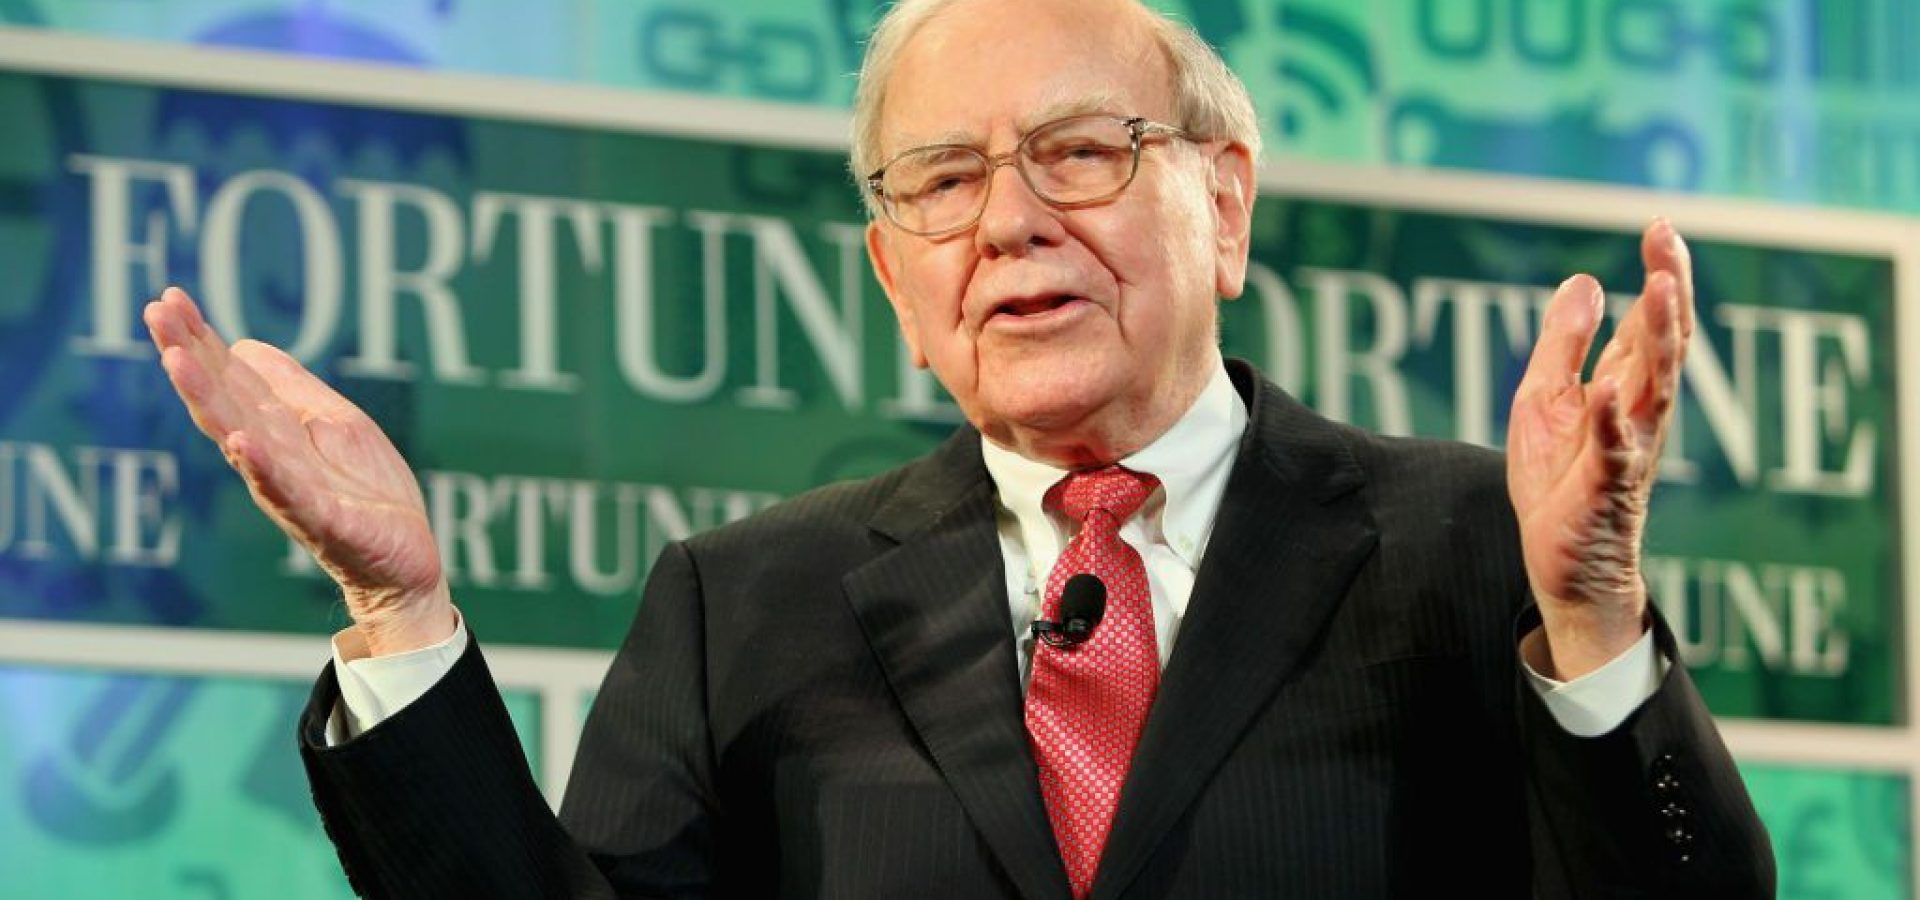 Warren Buffett is Hopeful in the Midst of Gloomy US Economy